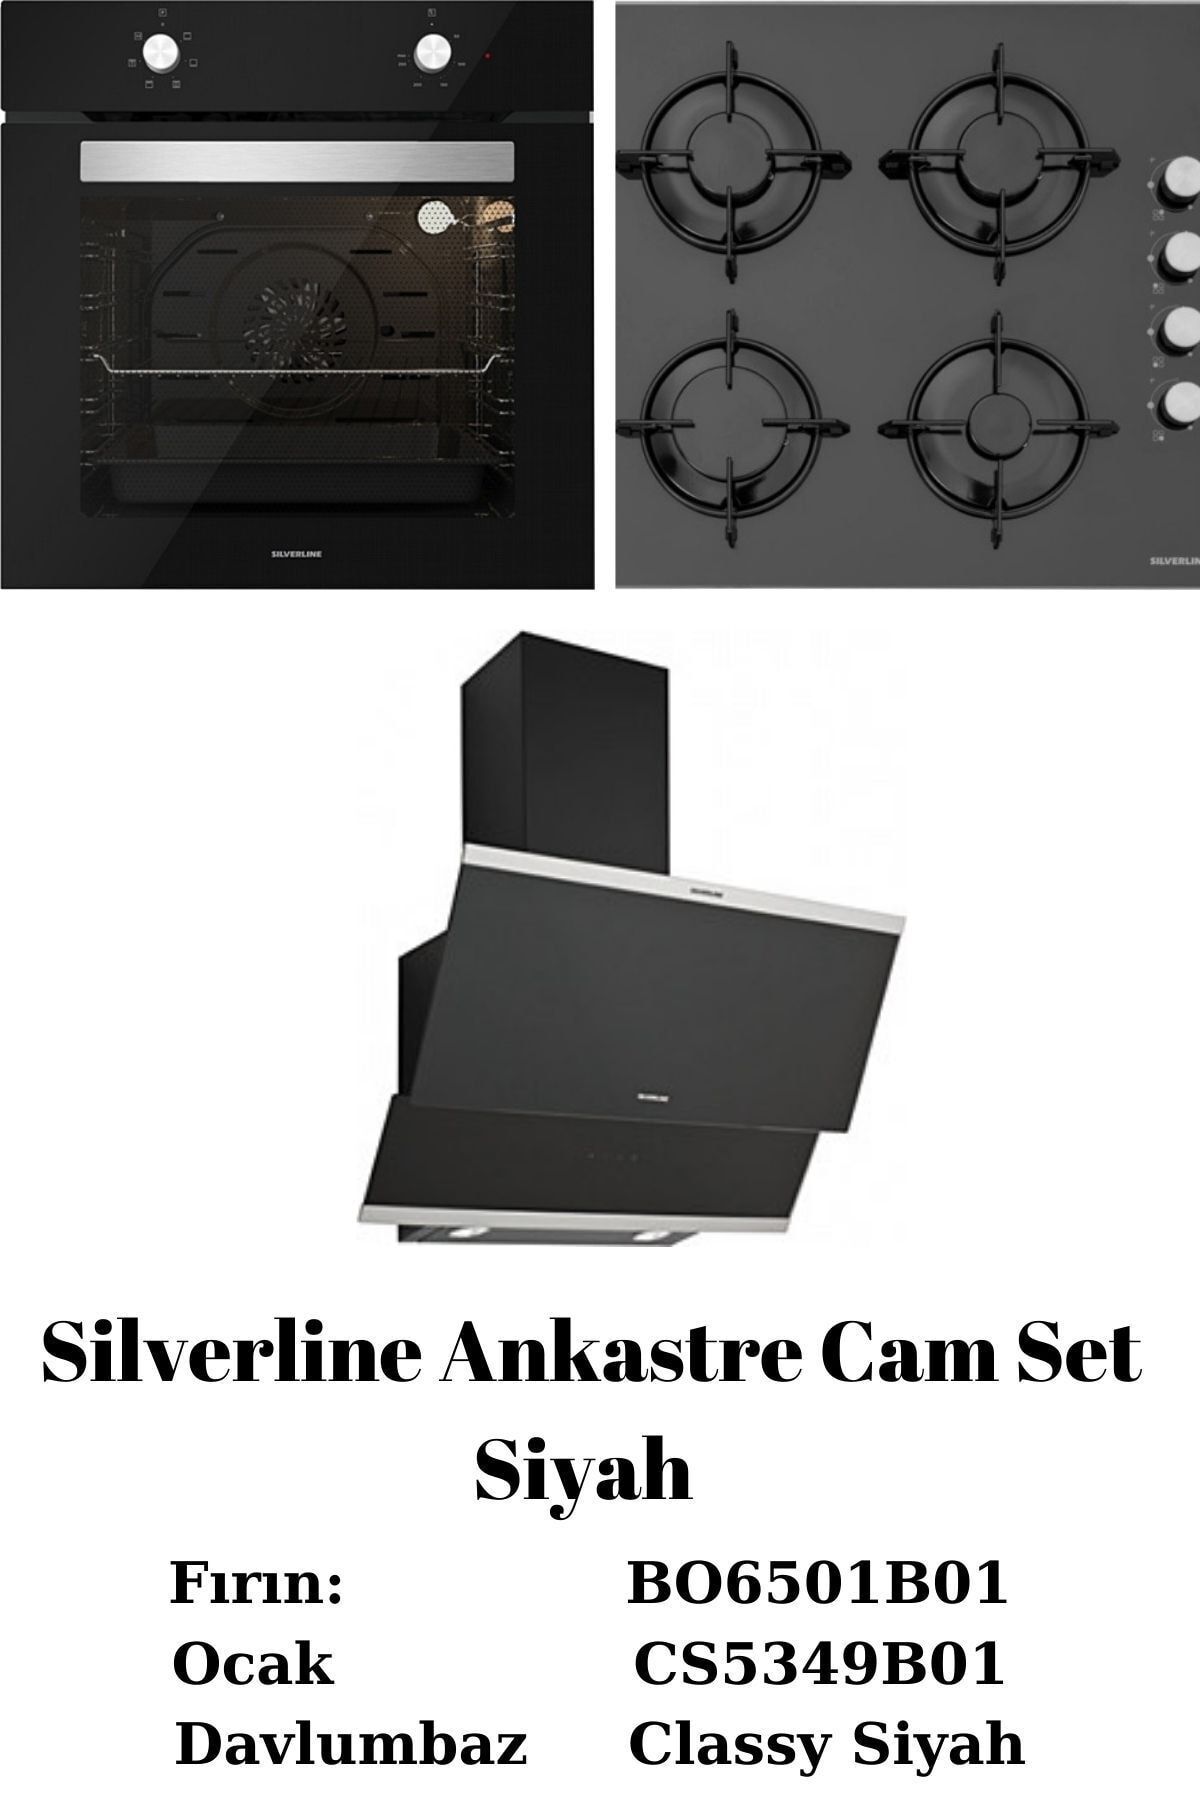 Silverline Ankastre Cam Set-1 Siyah Classy Siyah-bo6501b01-cs5349b01